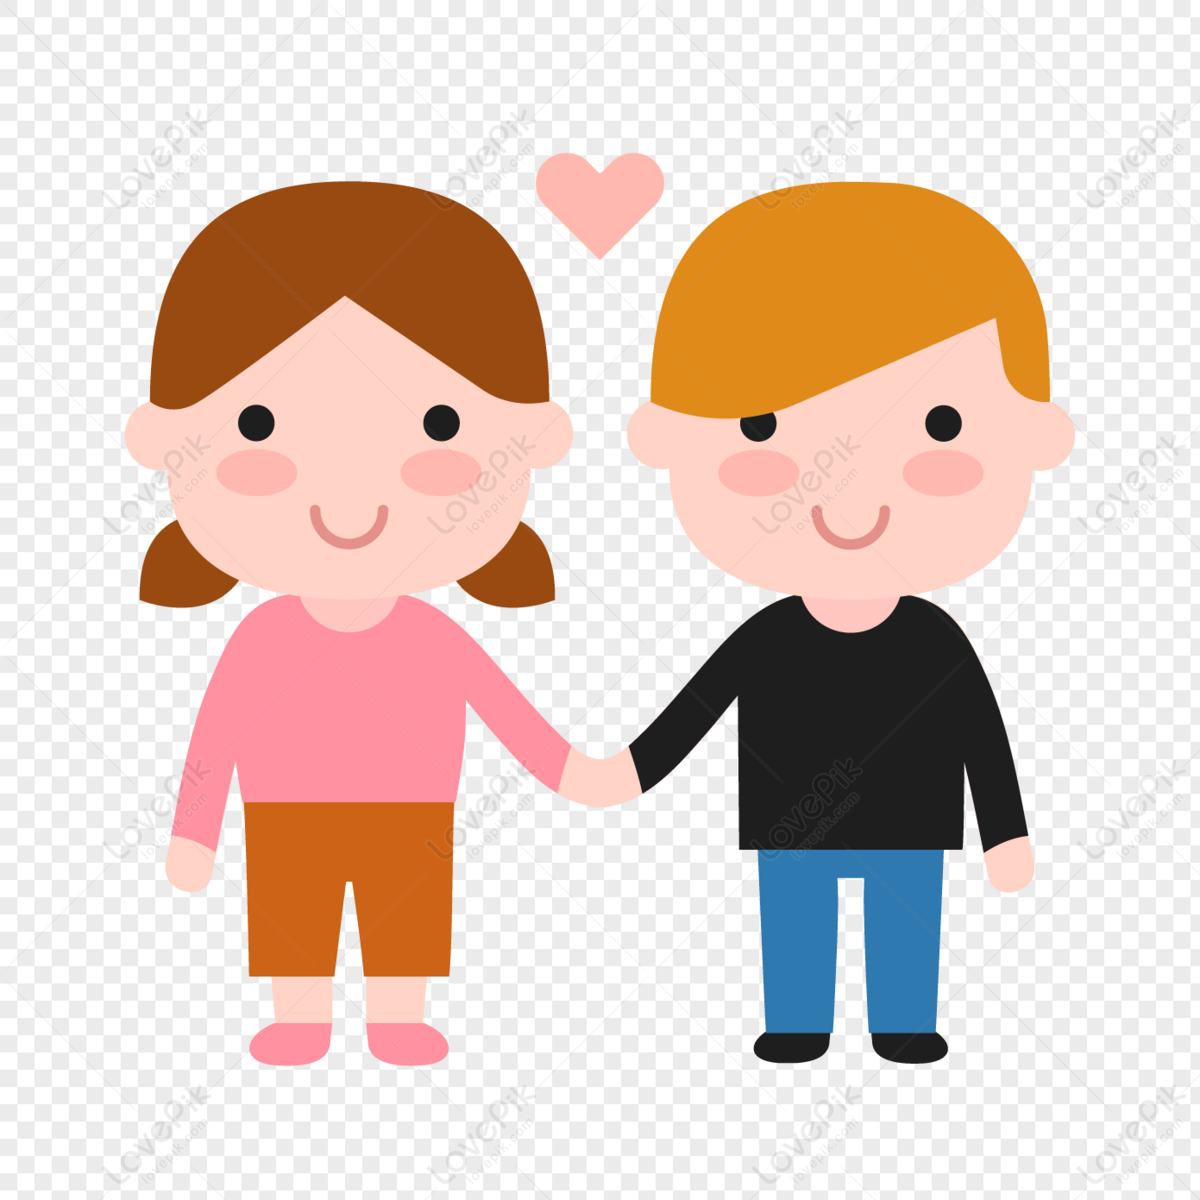 Một cặp đôi nhỏ nắm tay trong kỳ nghỉ lễ là hình ảnh lãng mạn và ngọt ngào. Hãy xem hình ảnh liên quan và thưởng thức sự đáng yêu và thân thiện của cặp đôi trong kỳ nghỉ lễ này!